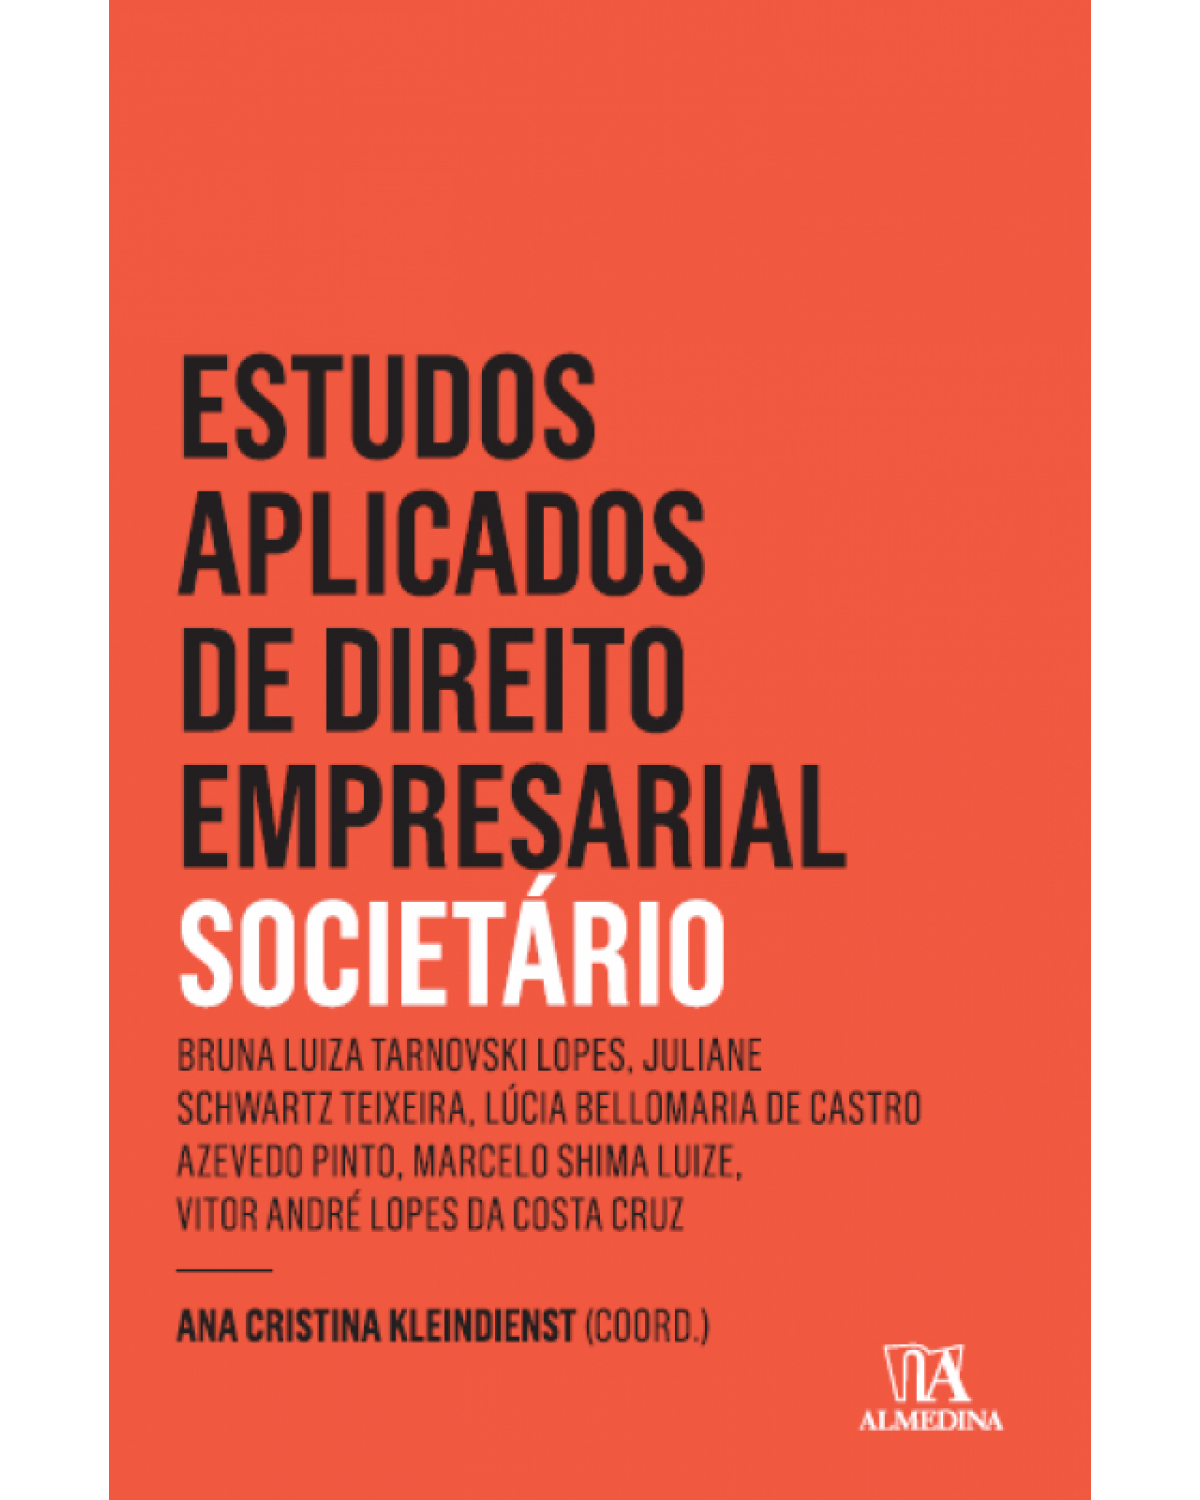 Estudos aplicados de direto empresarial - societário - 1ª Edição | 2016